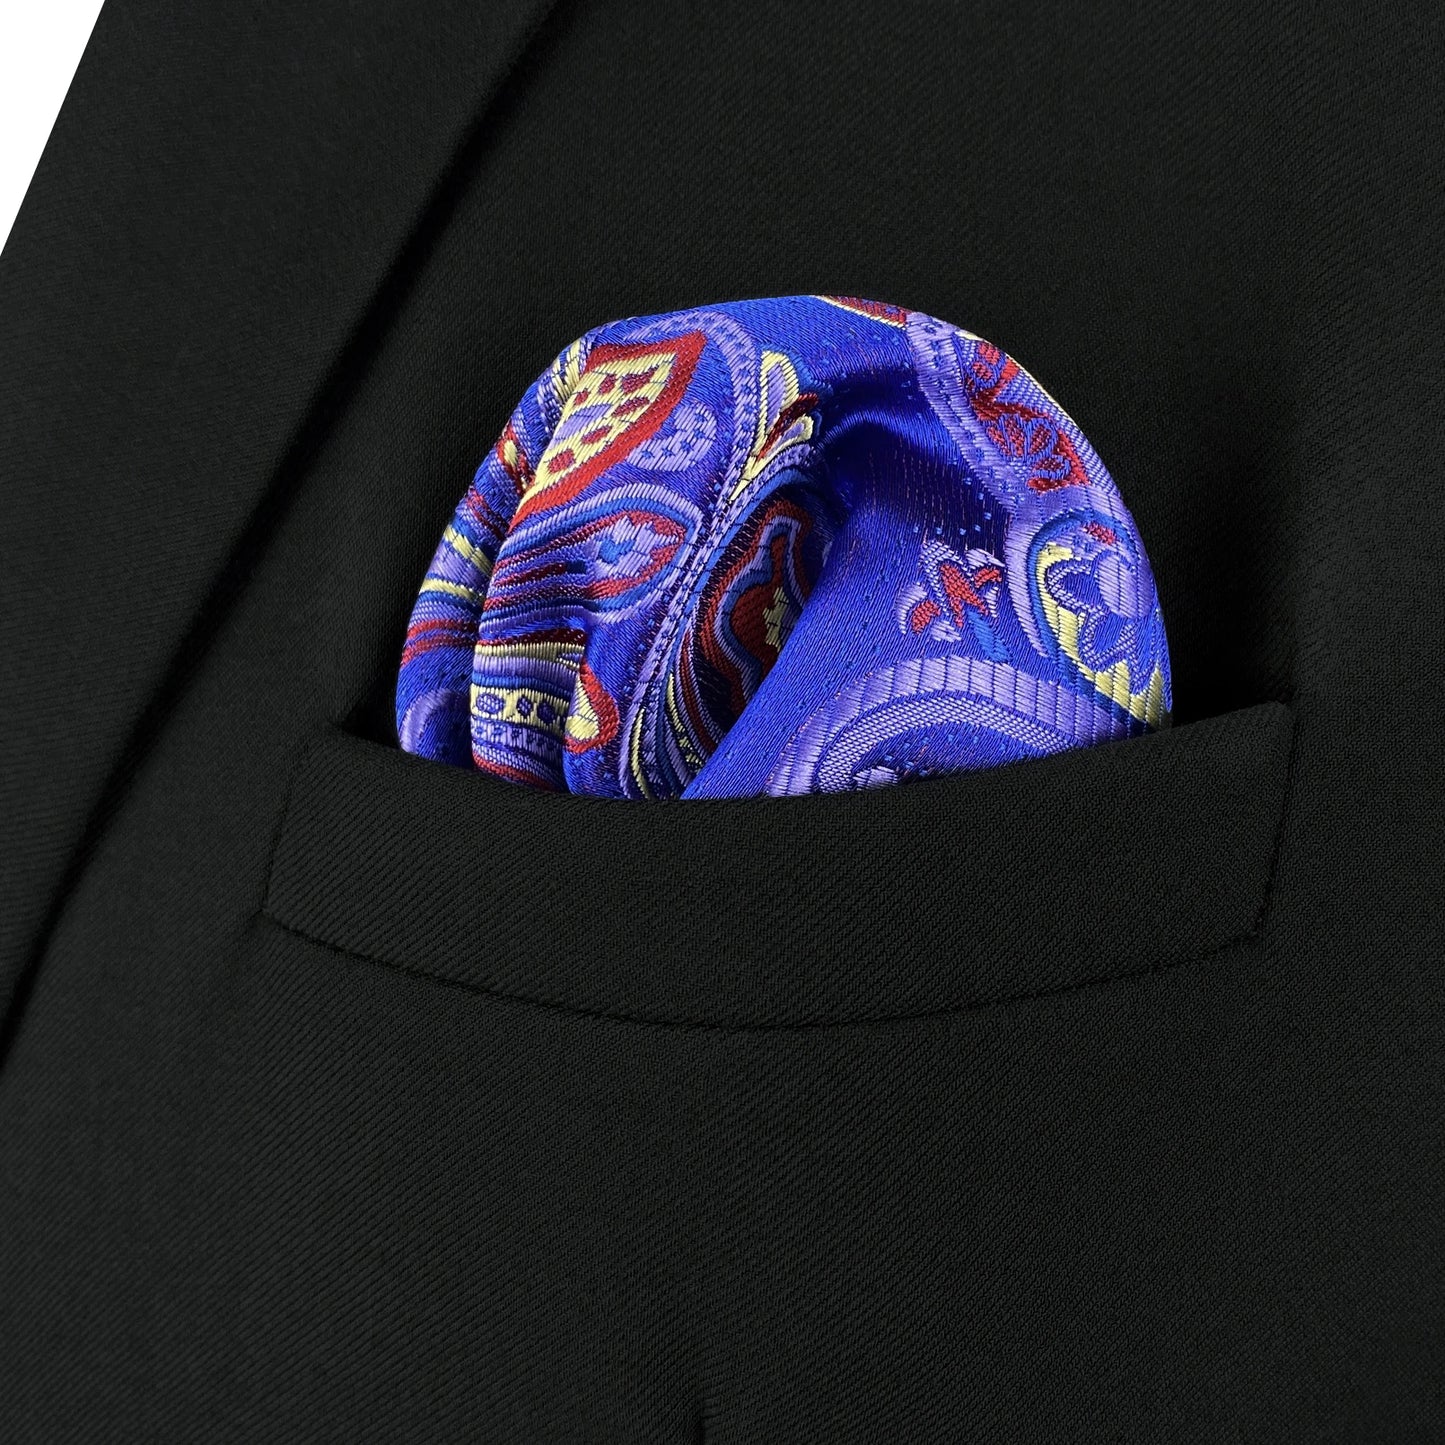 Herren-Taschentuch mit bunten Punkten und purpurnen Streifen